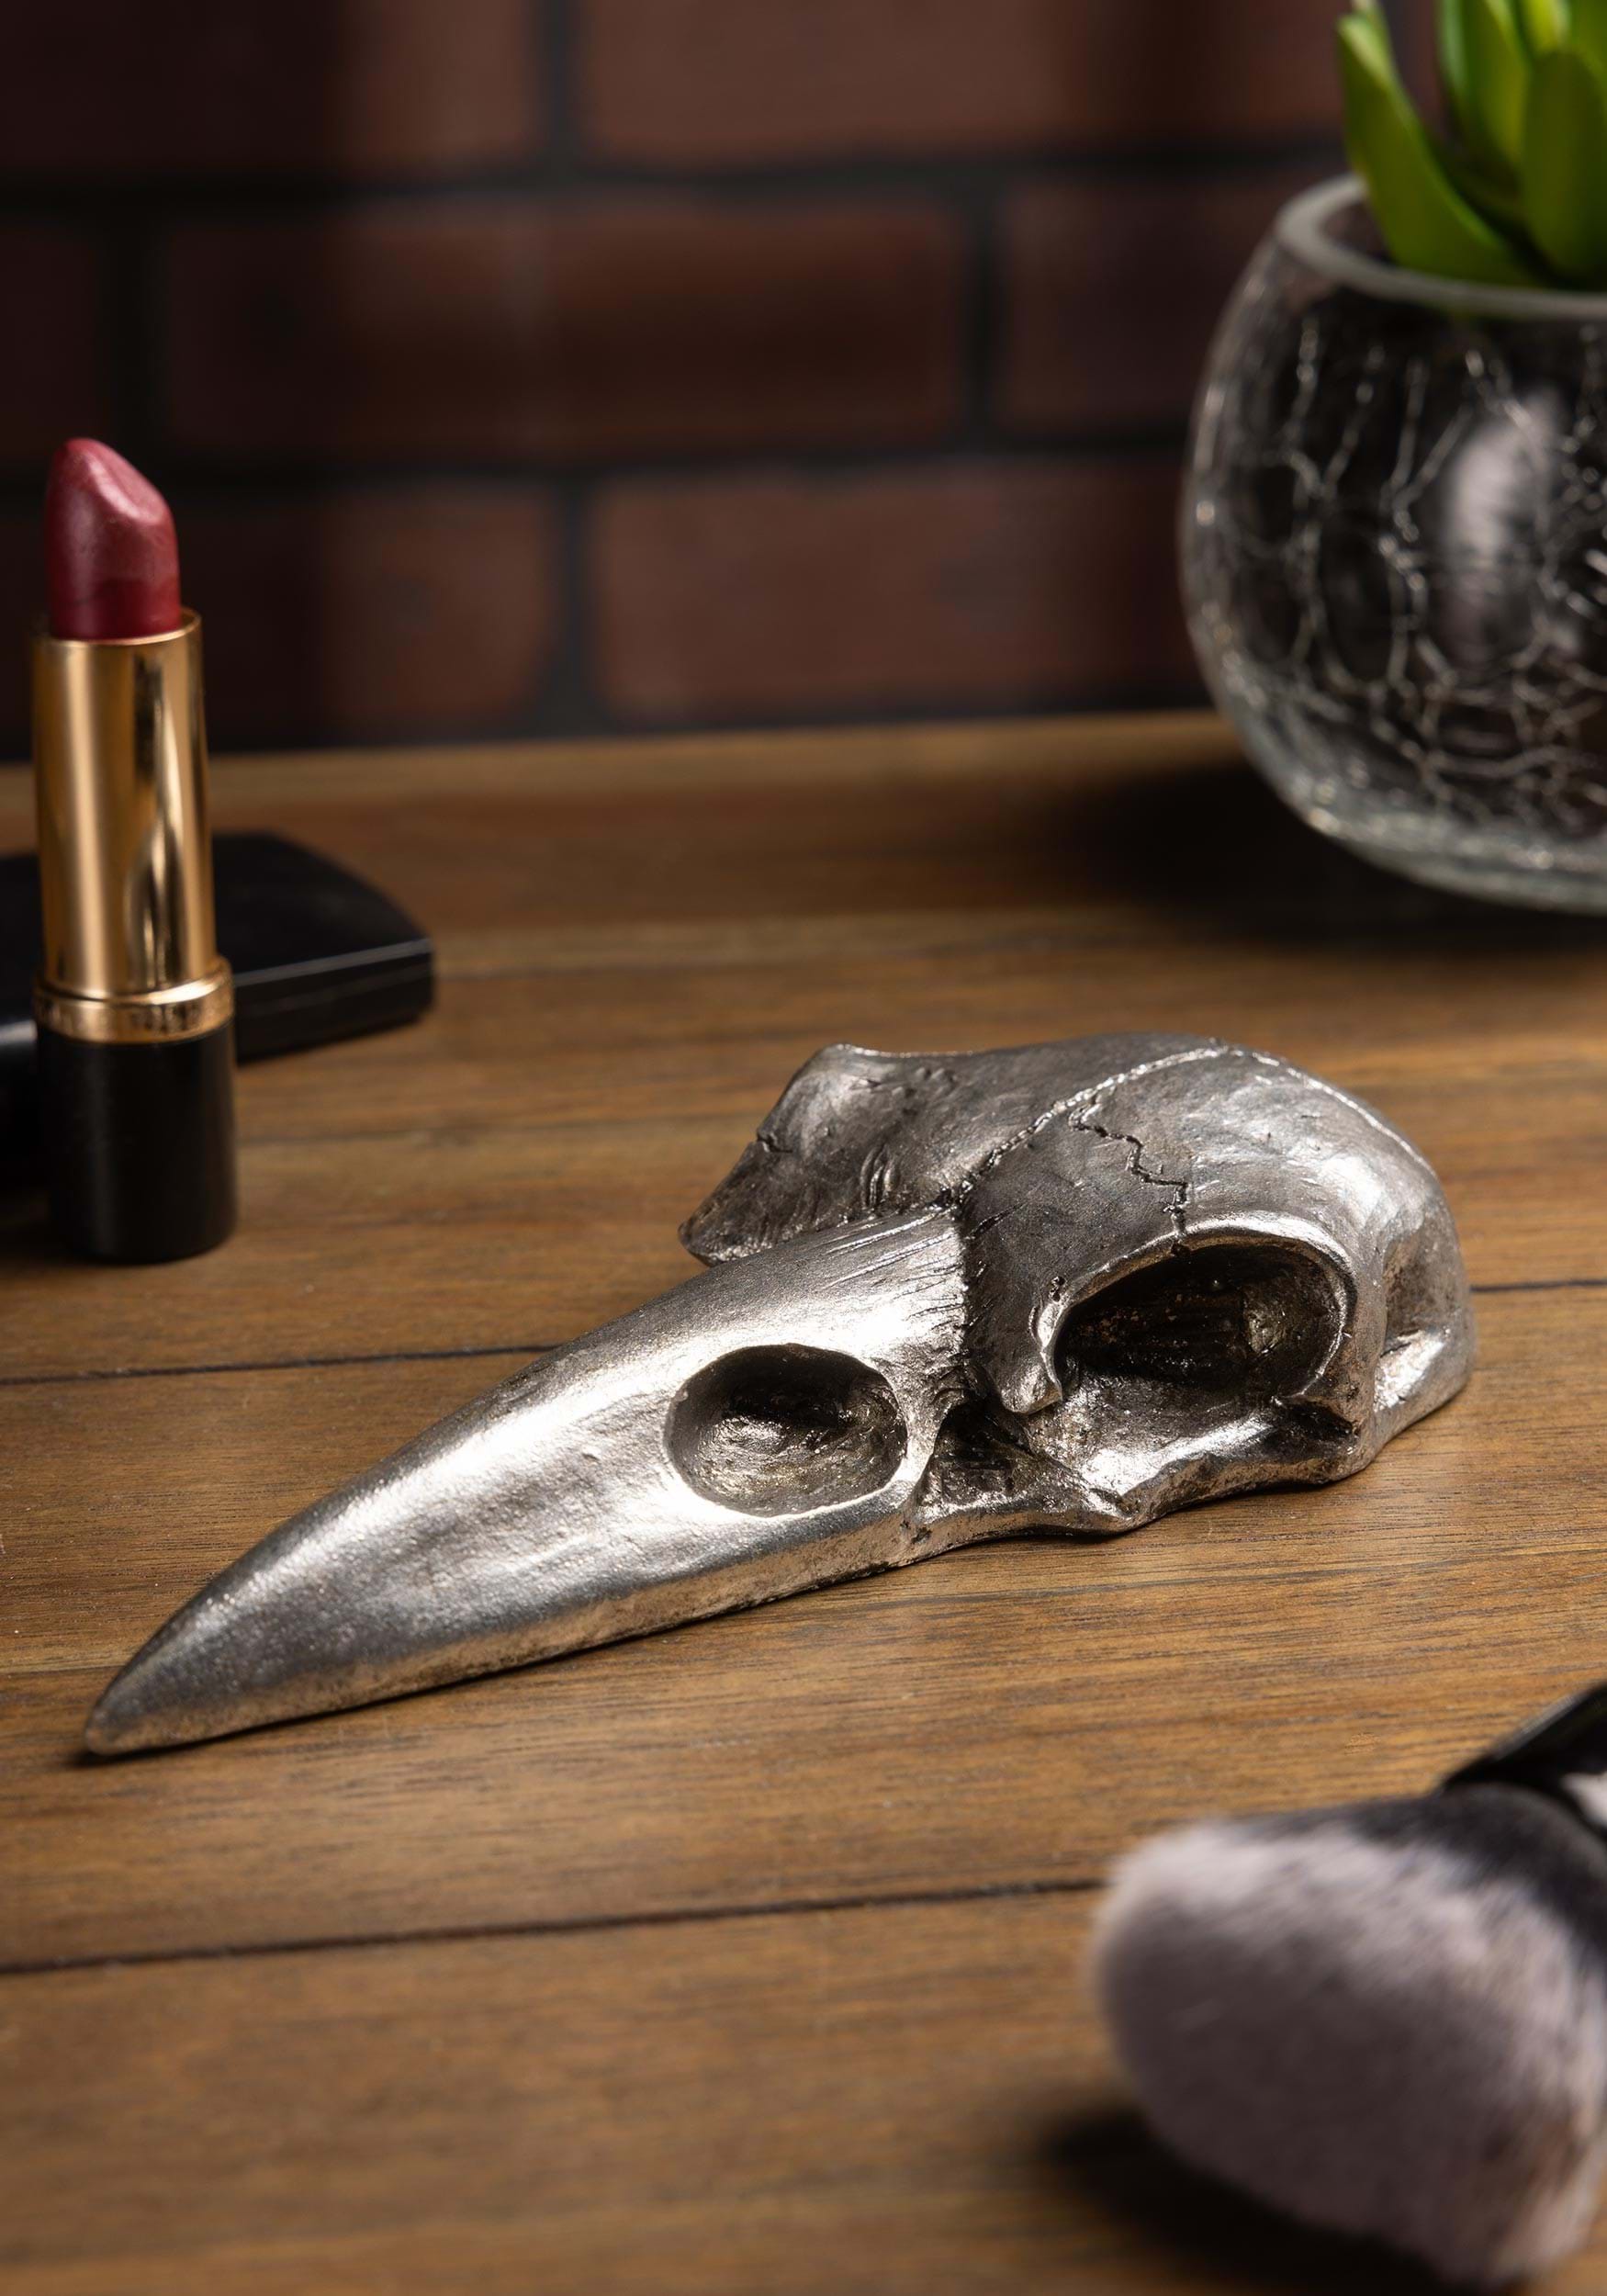 Gothic Silver Raven Skull Hand Mirror Halloween Decoration